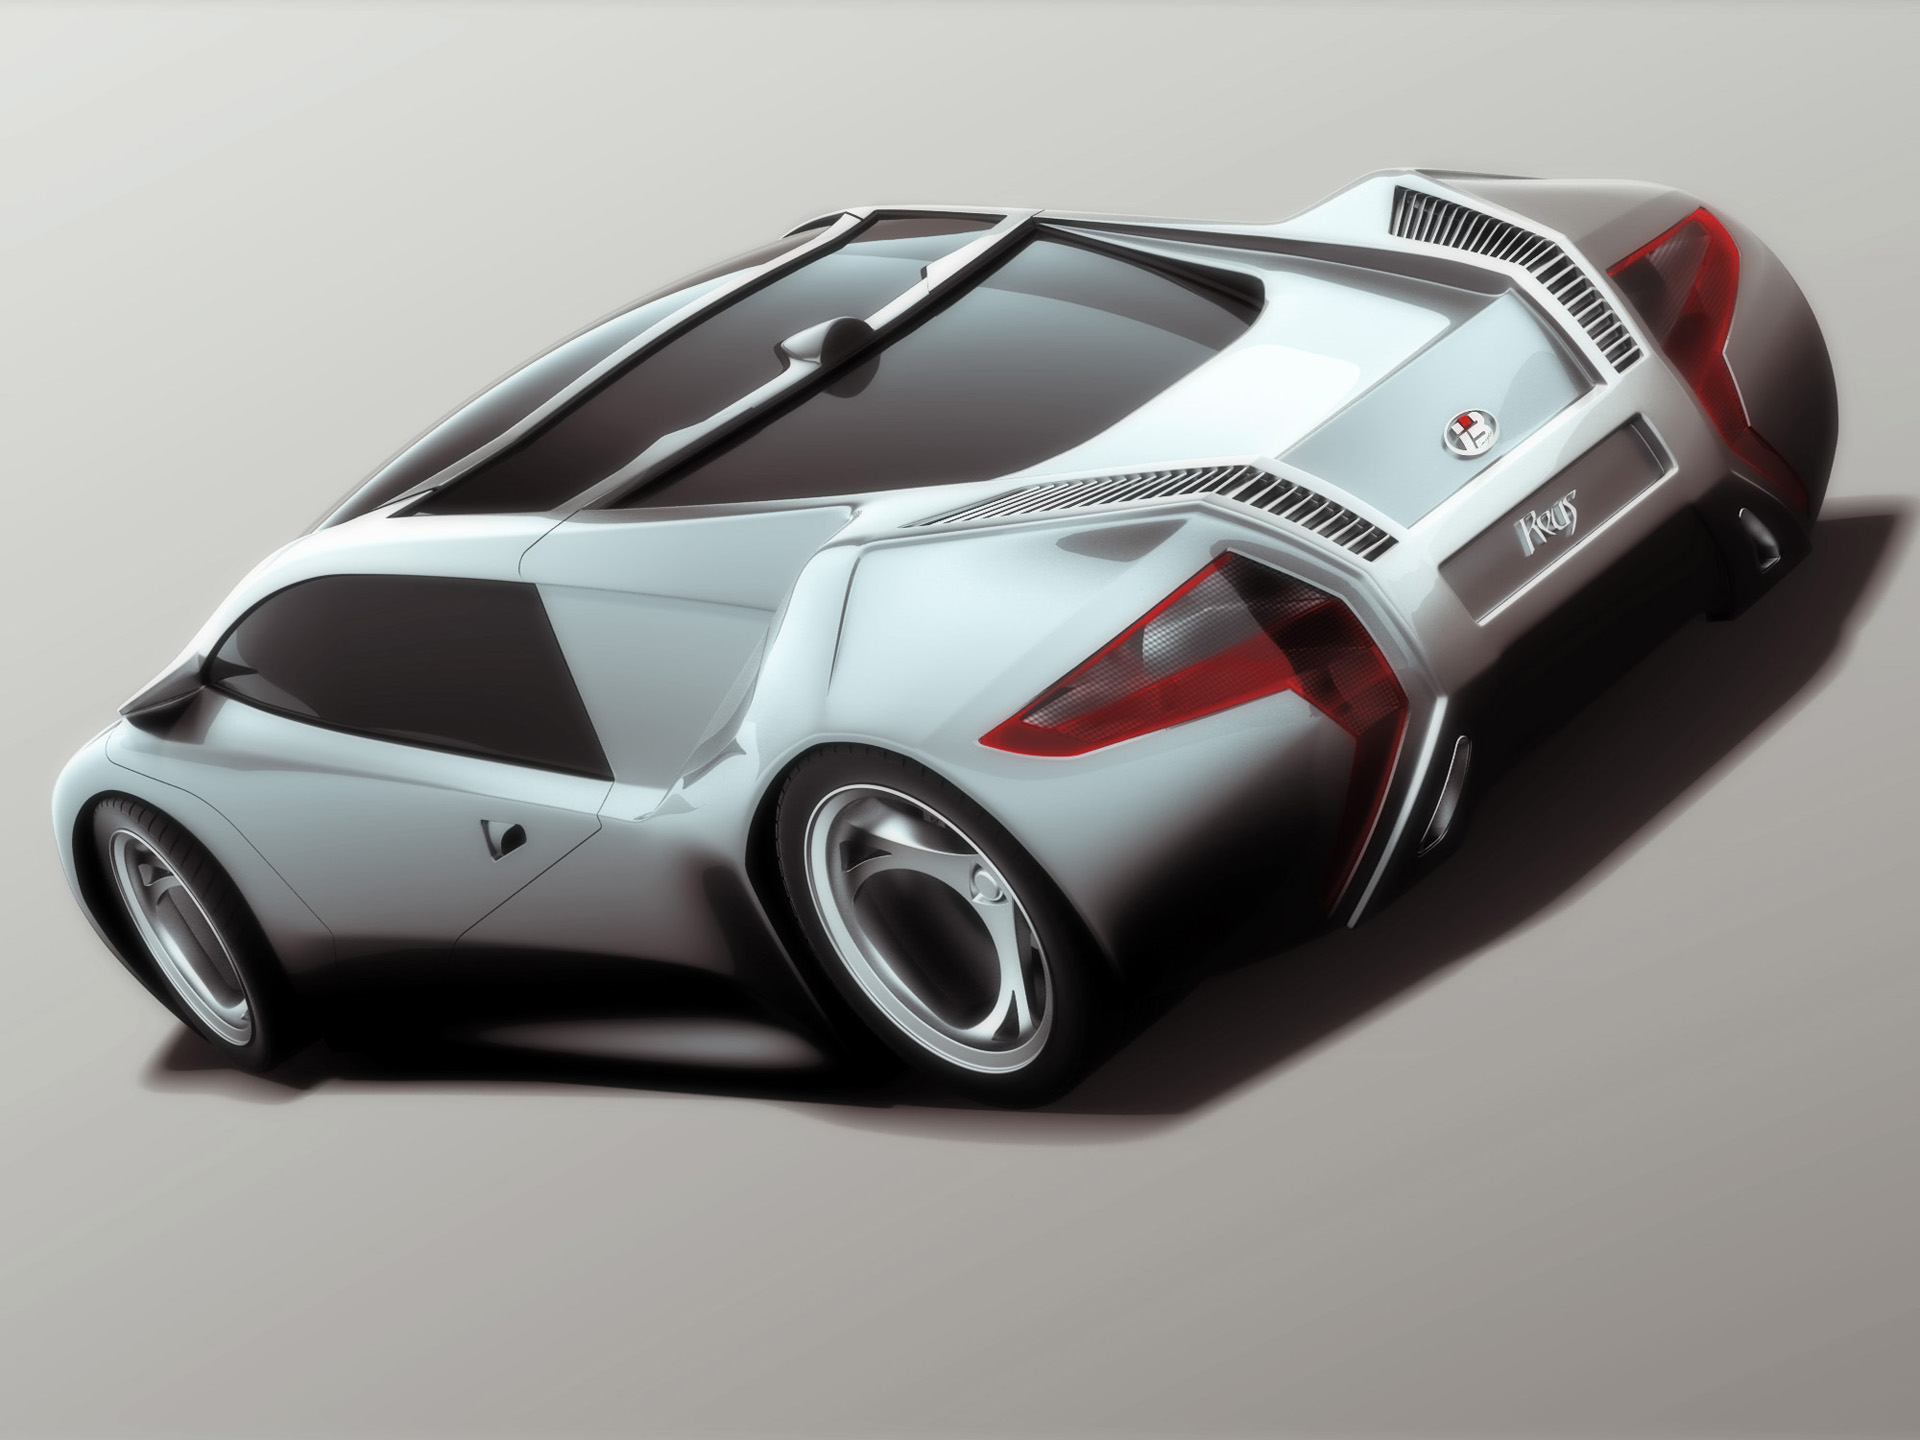 2007, I2b, Concept, Reus, Supercar, Supercars, Ds Wallpaper